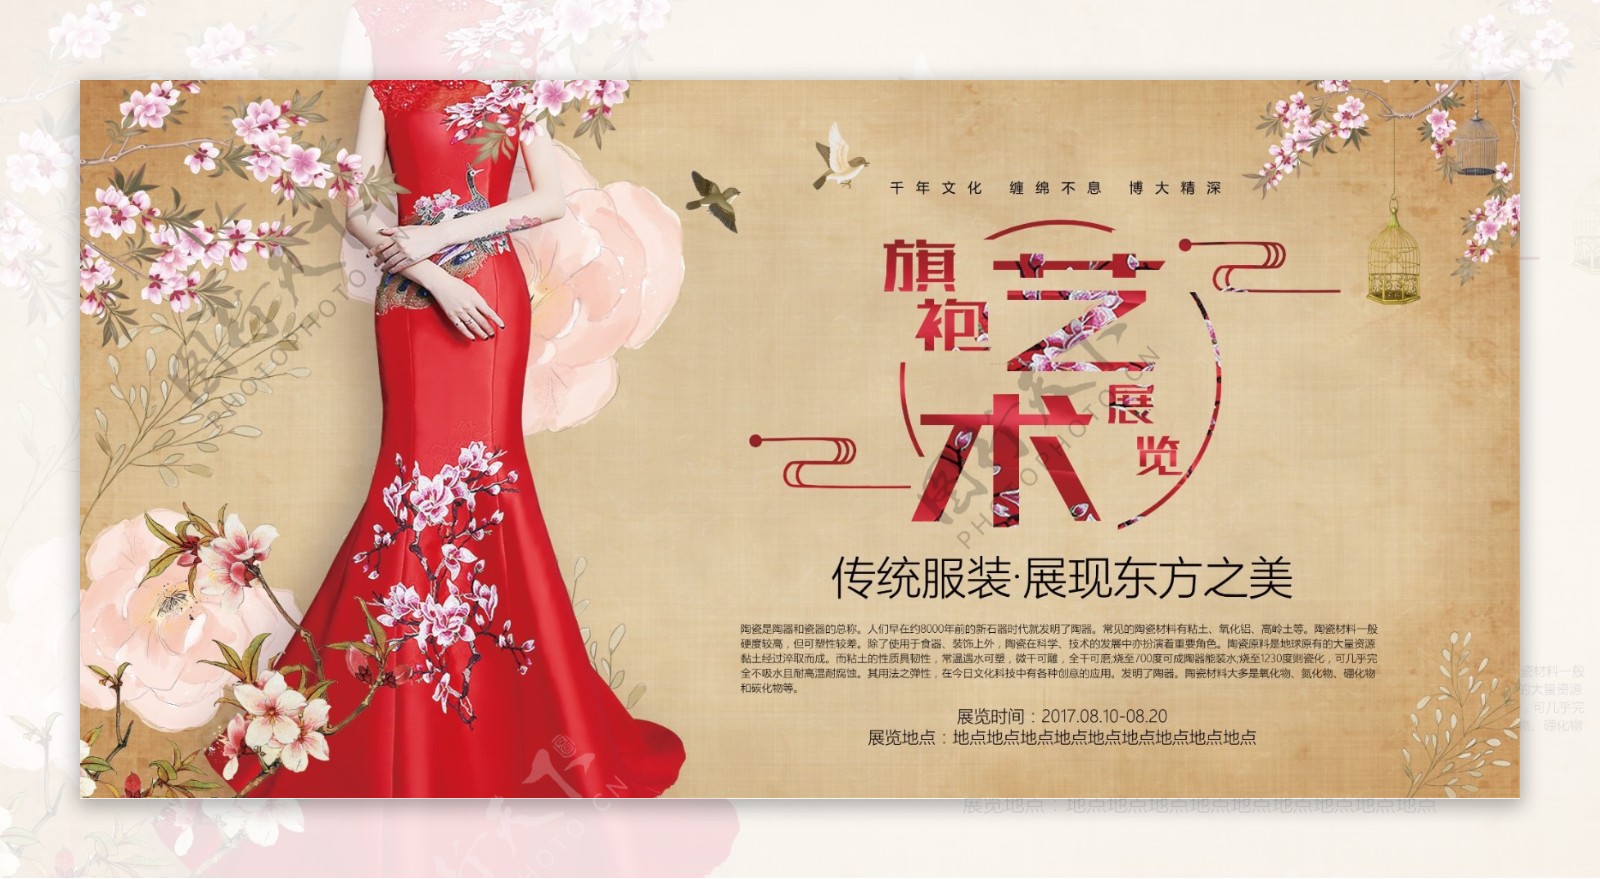 精美中国风人物海报艺术设计